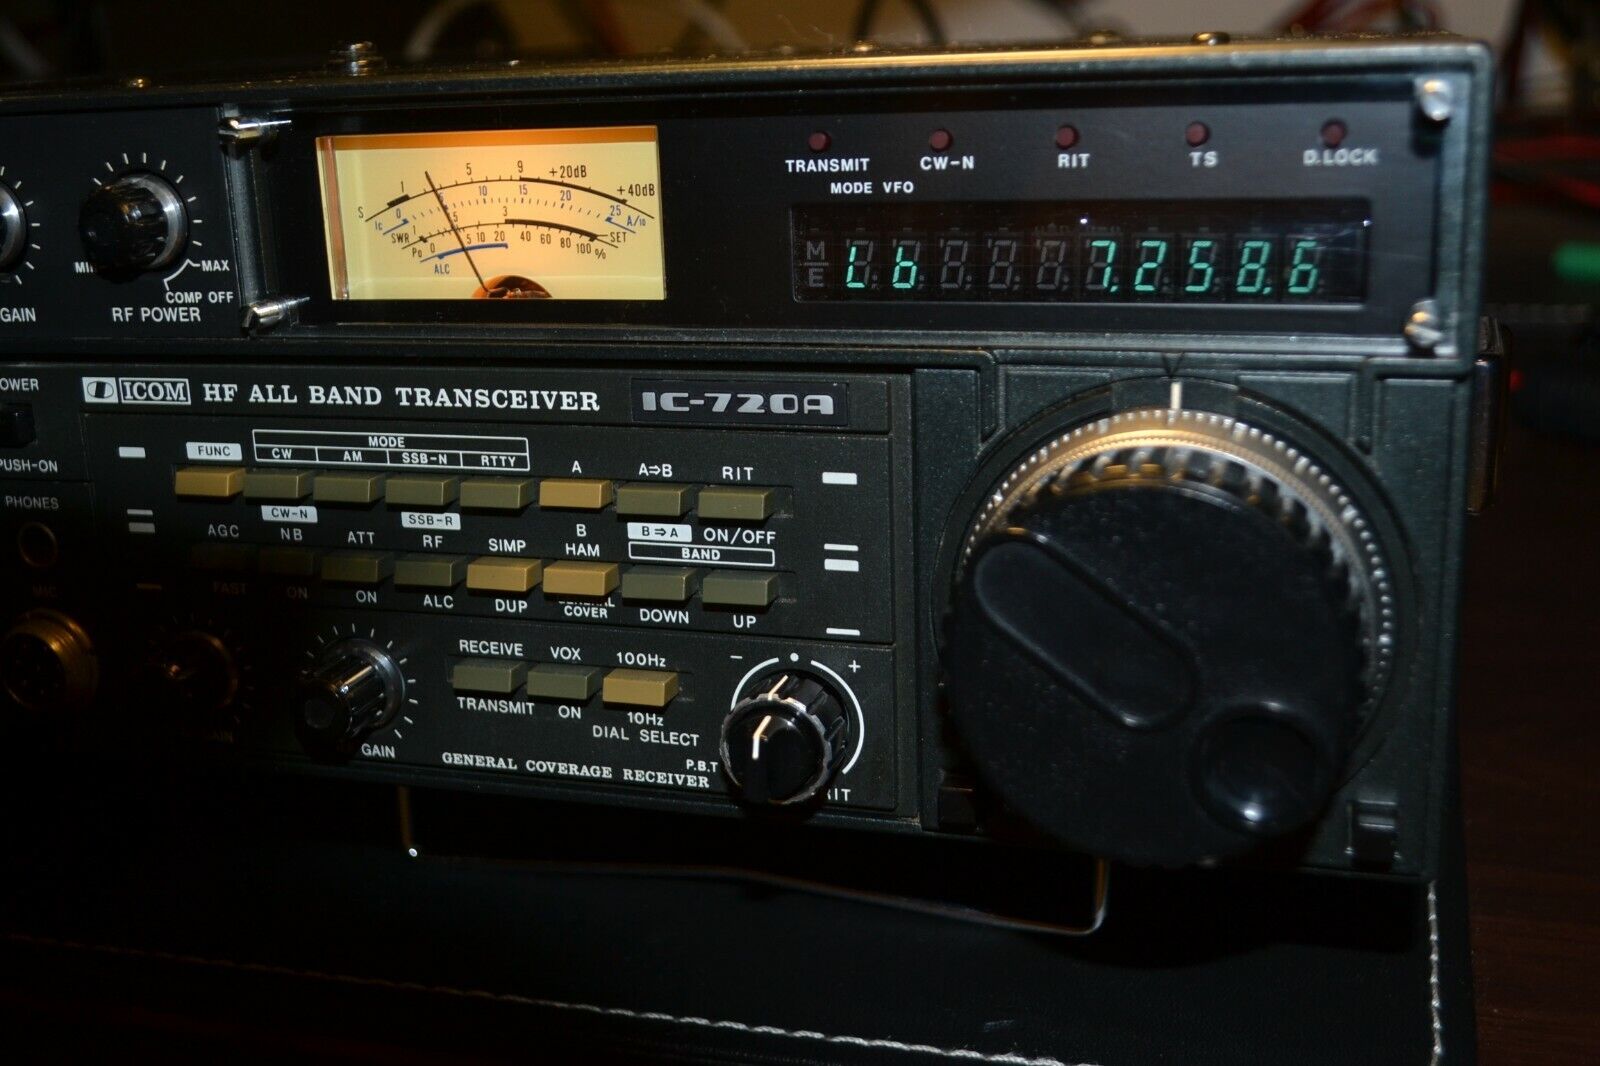 Icom IC-720a HF HAM radio transceiver